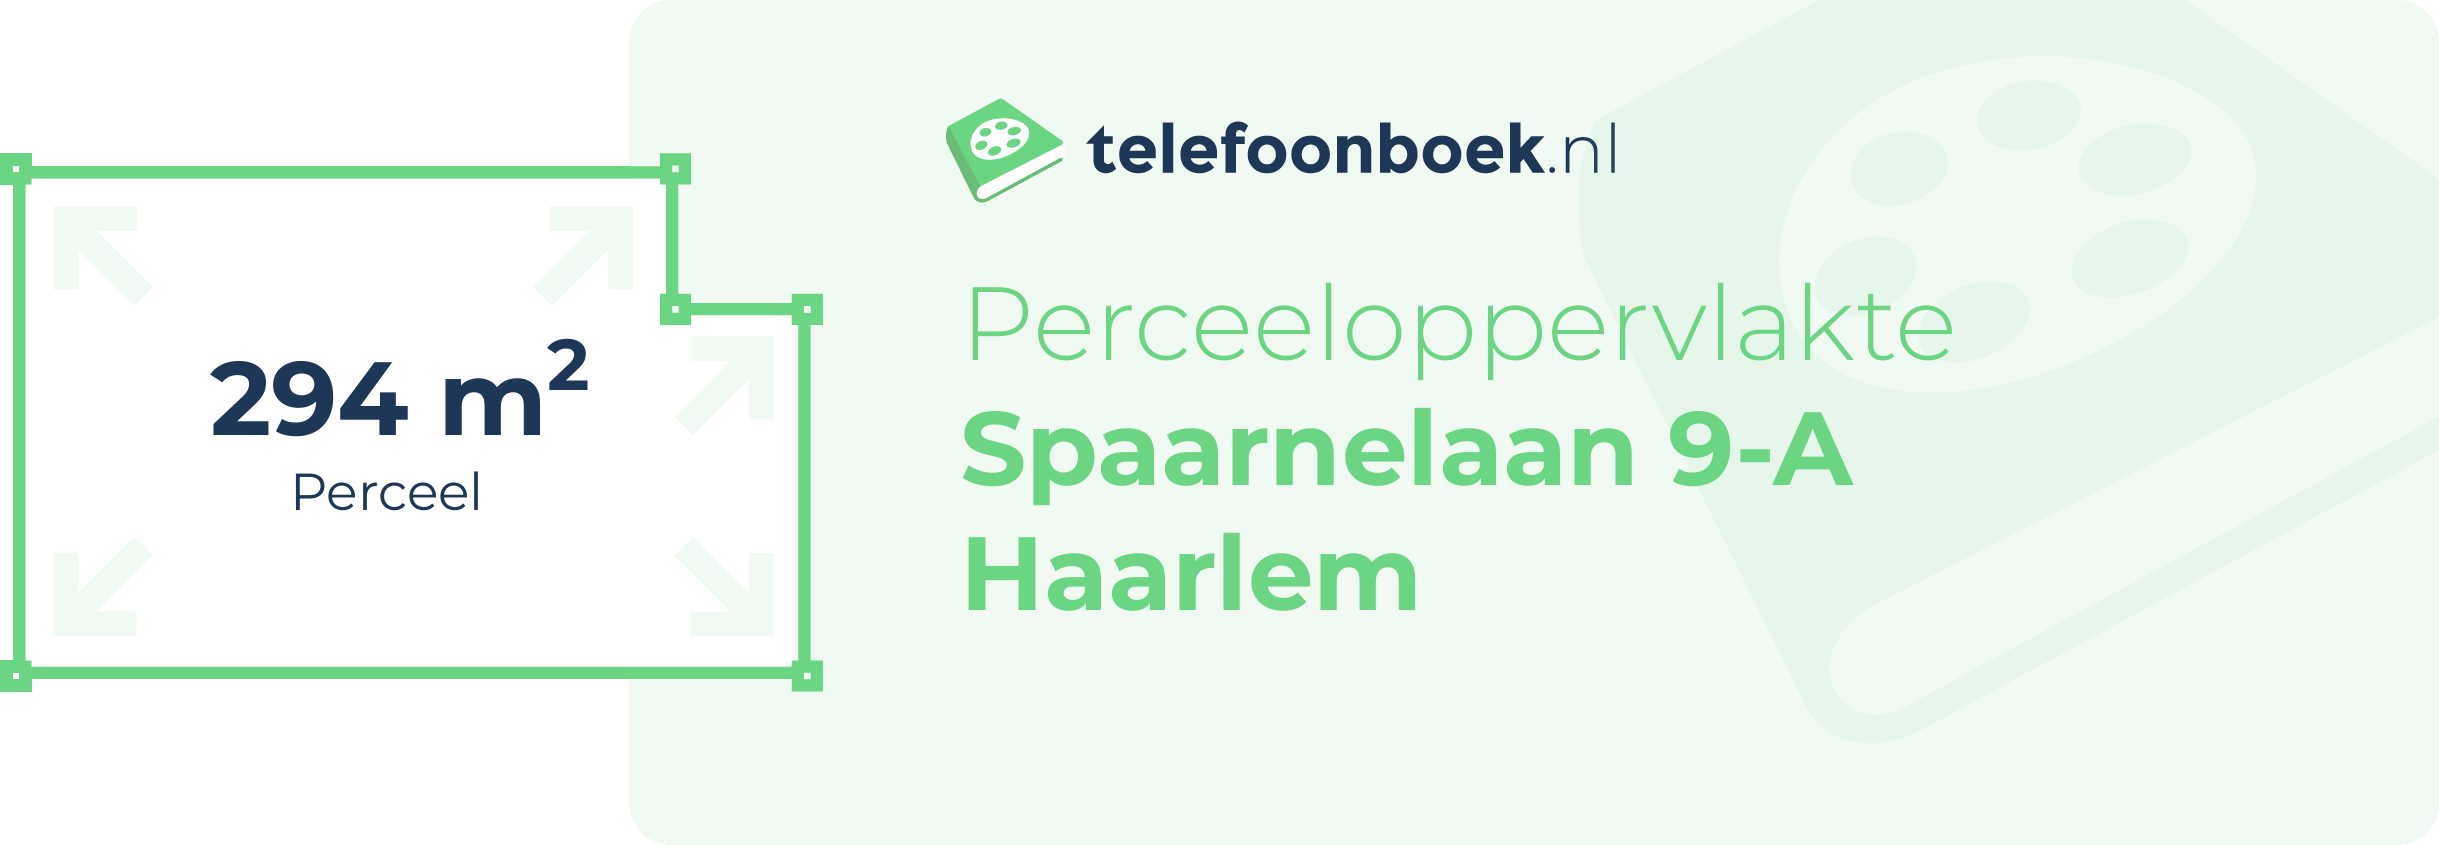 Perceeloppervlakte Spaarnelaan 9-A Haarlem